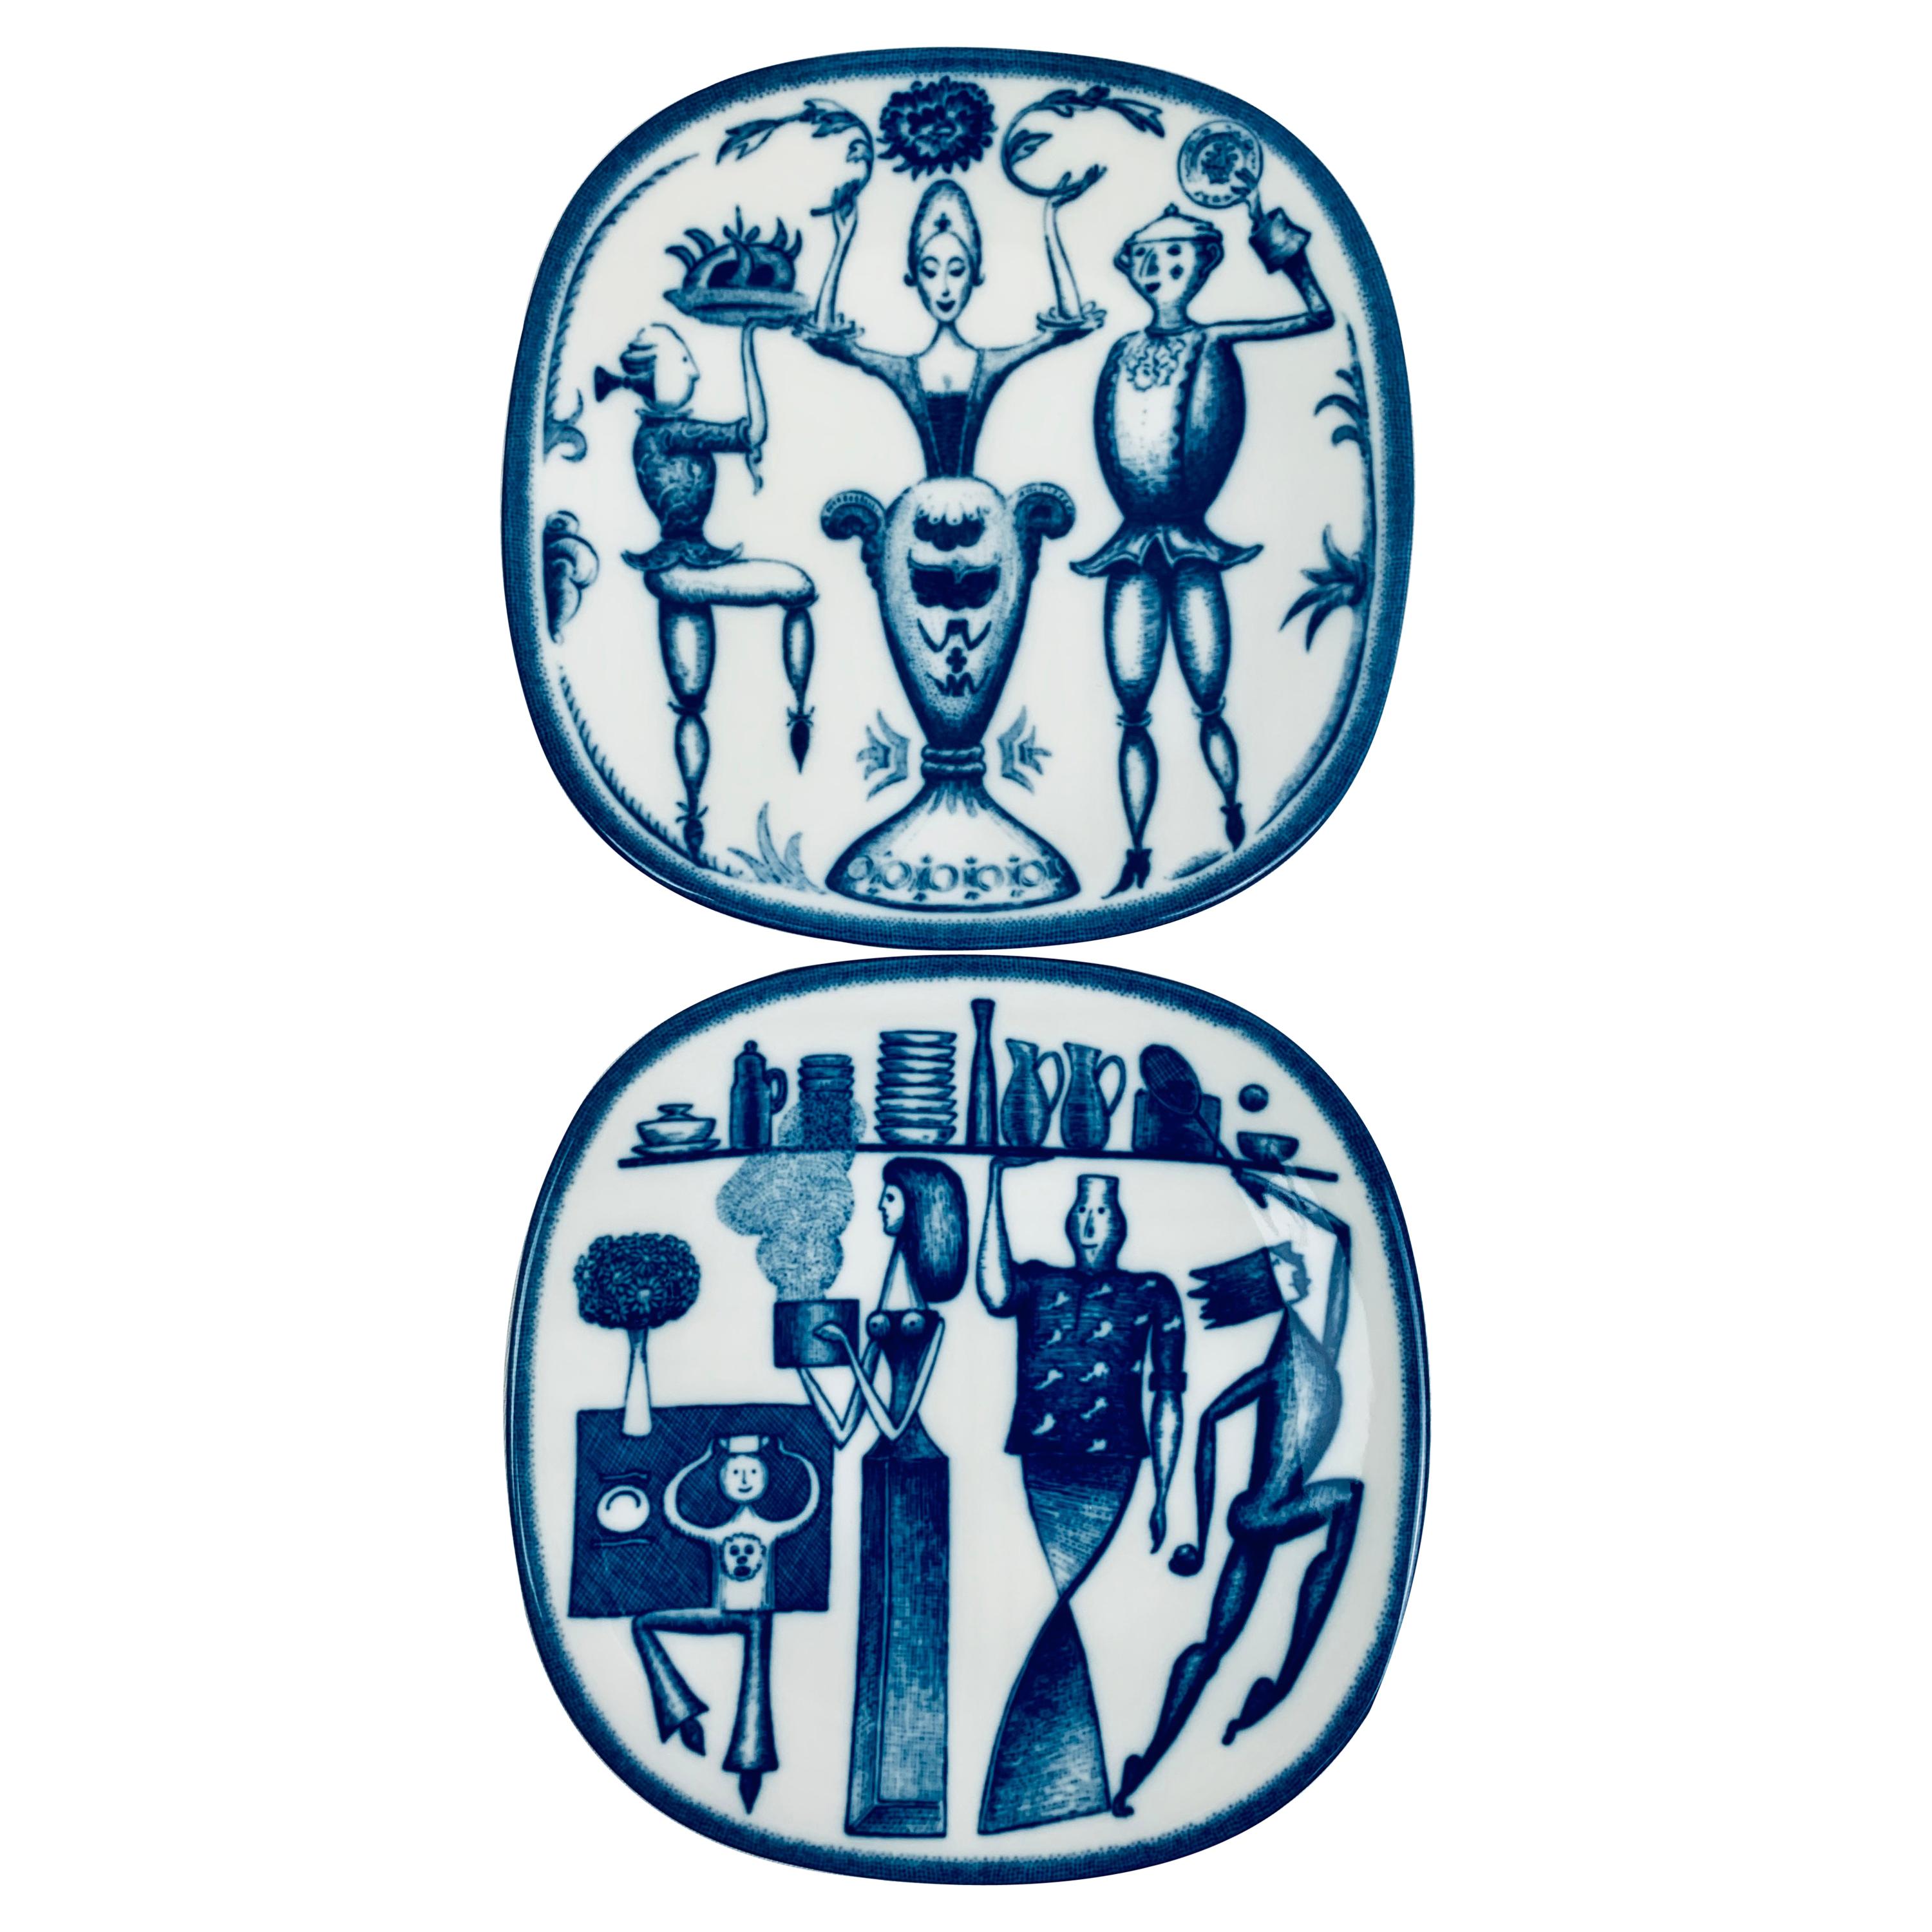 Rörstrand Porcelain Commemorative Plates-Niels-Christian Hald in Blue, Sweden